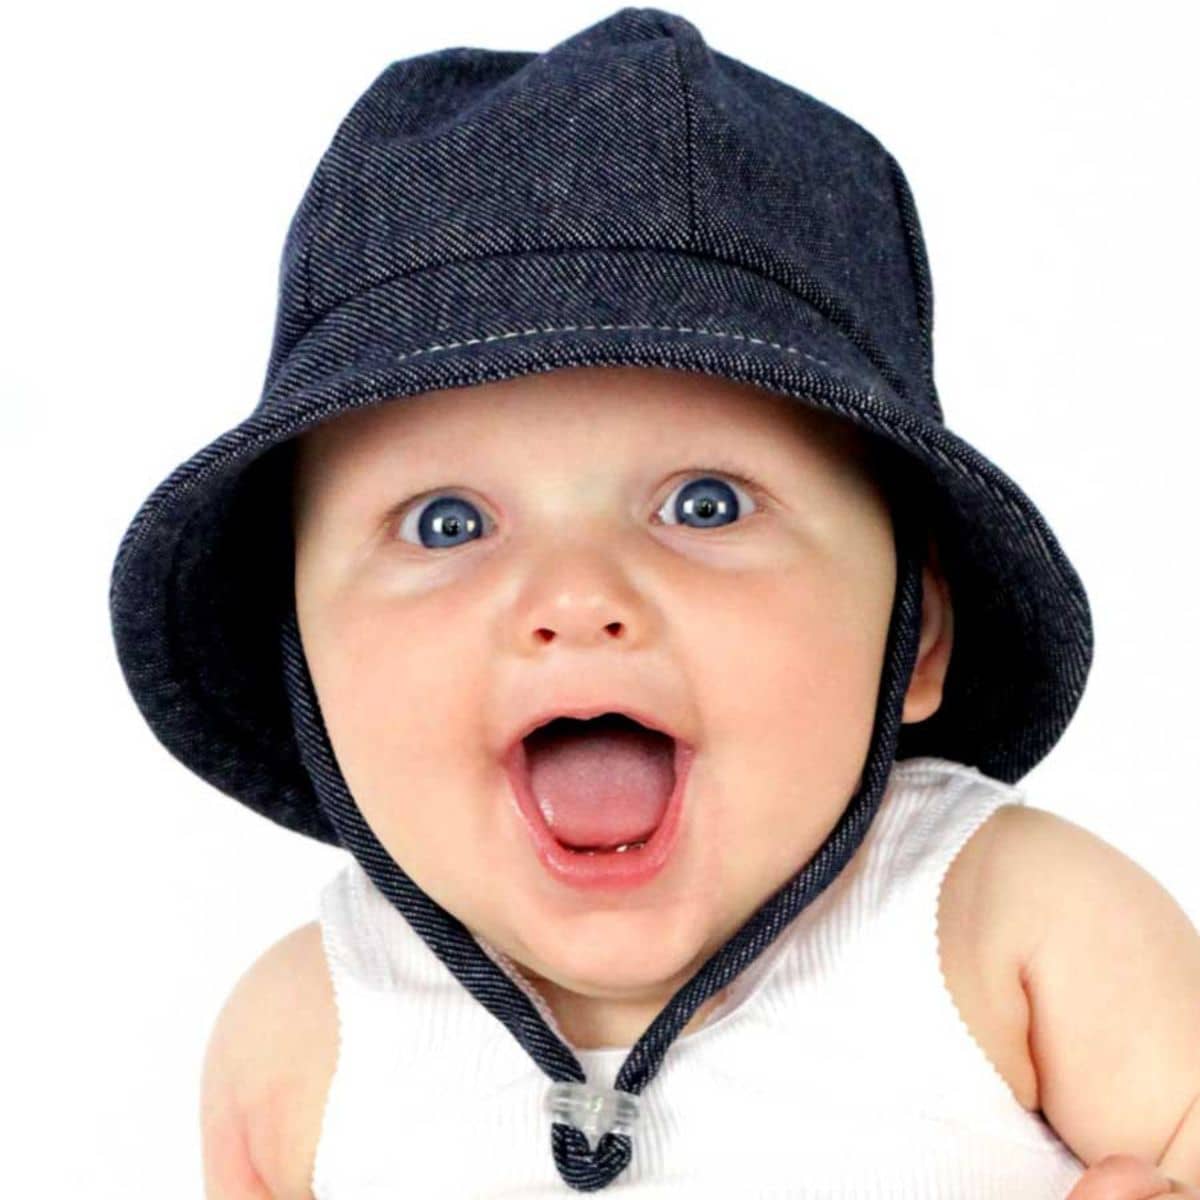 Bedhead Baby Bucket Hat with Strap - Denim